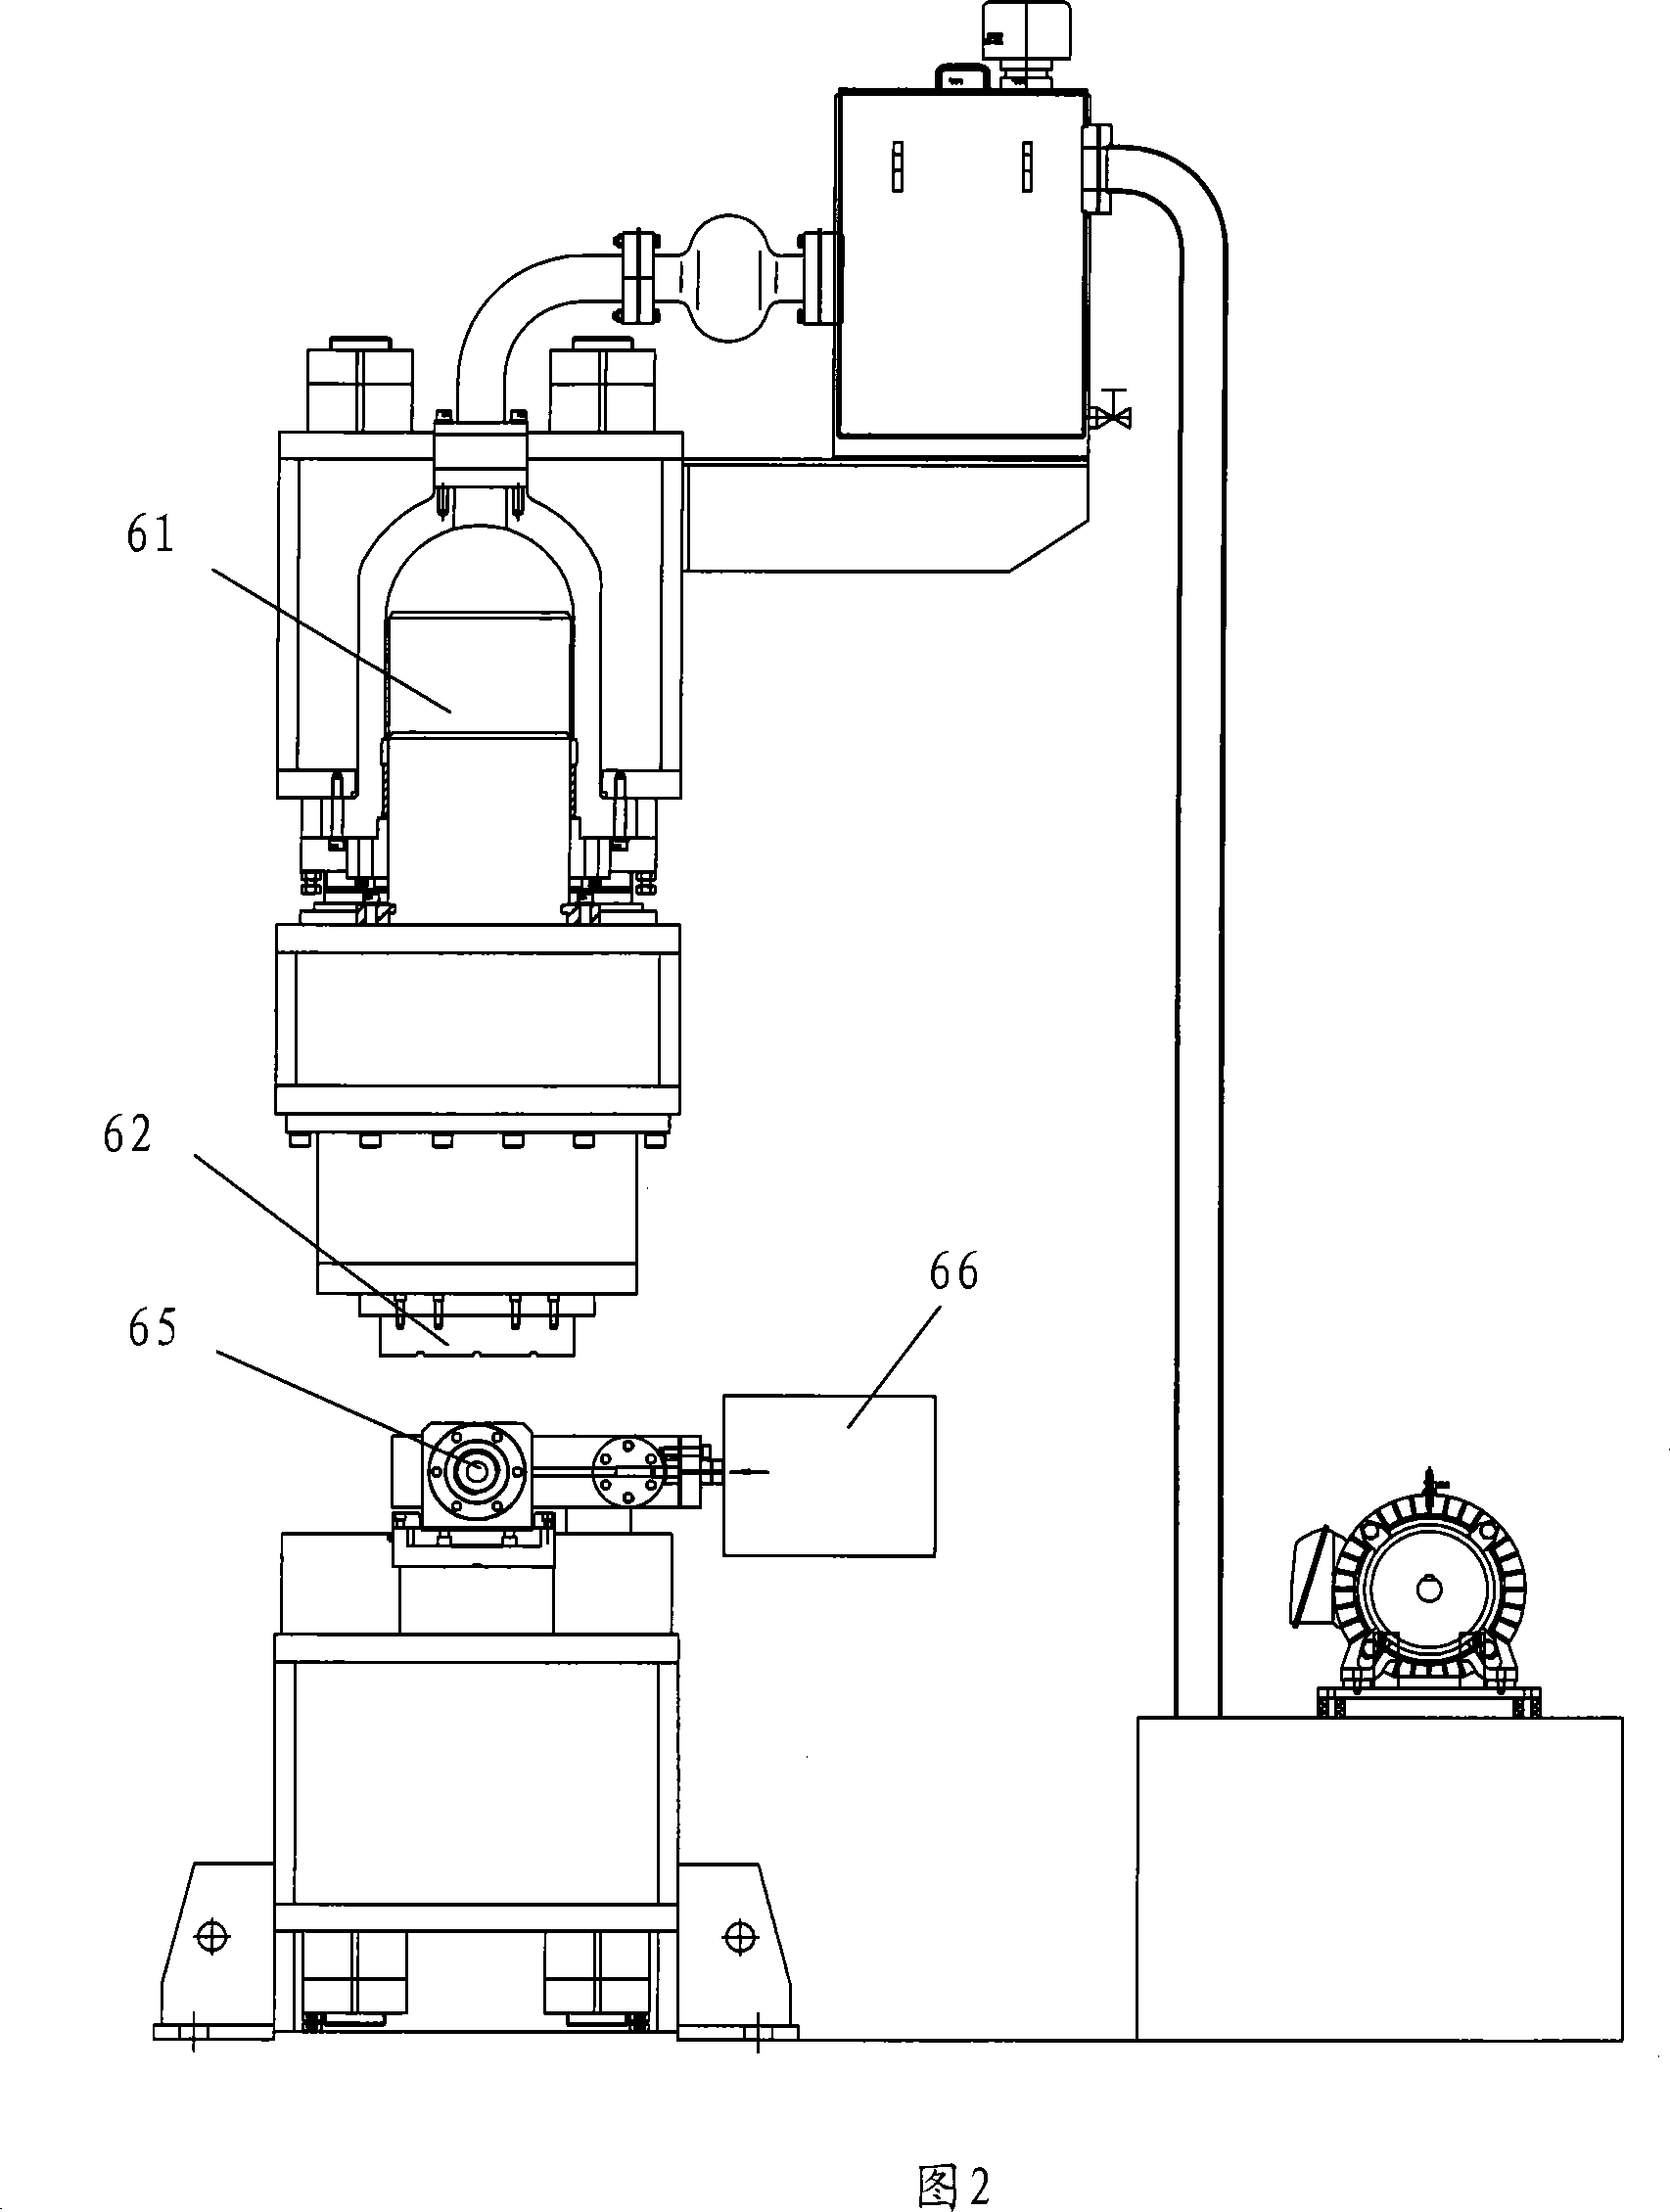 Hydraulic forming equipment